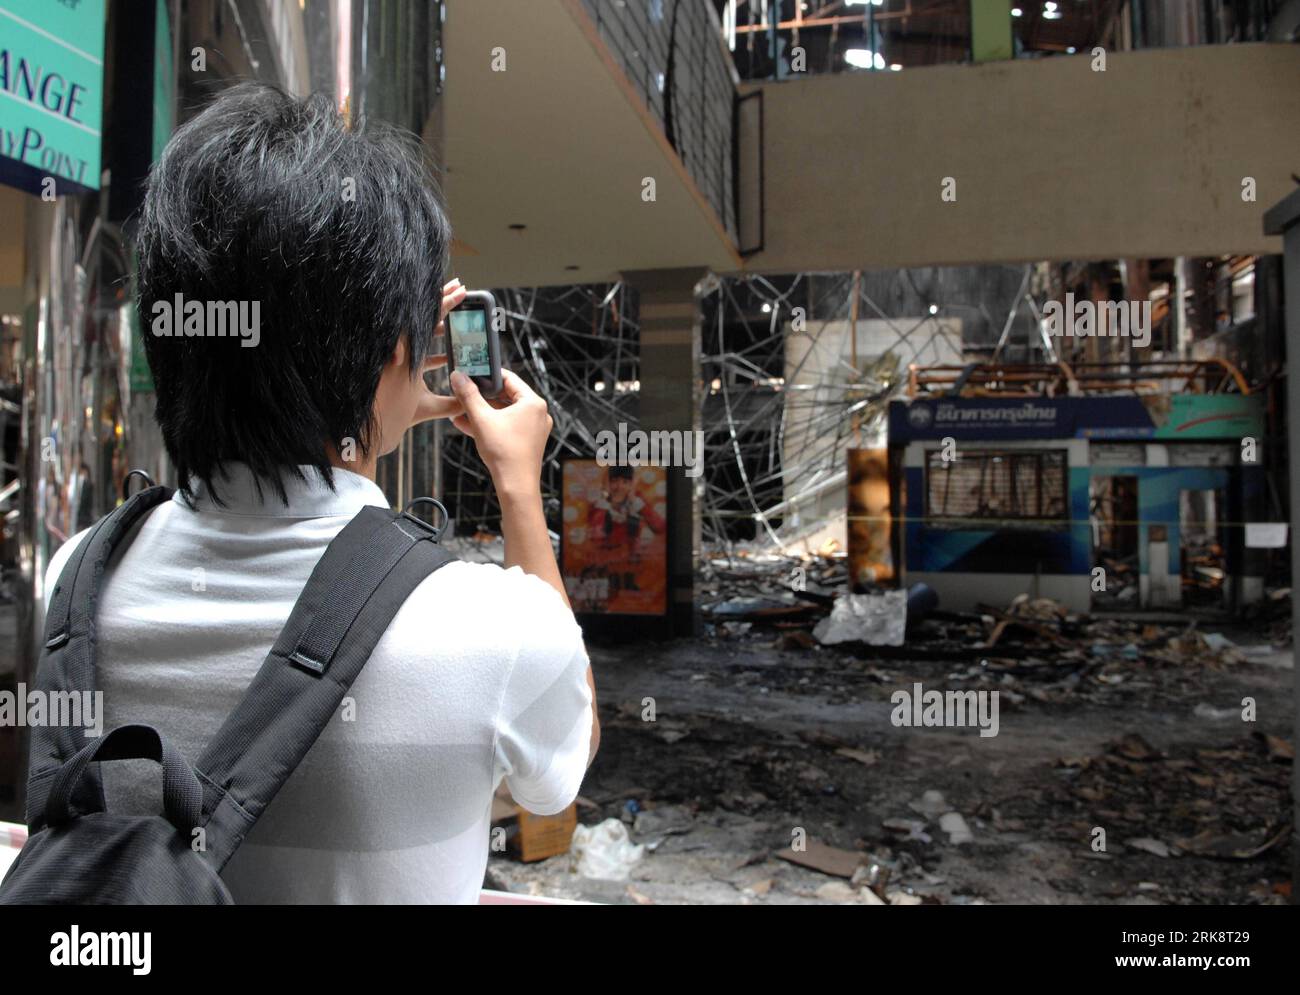 Bildnummer : 54072378 Datum : 24.05.2010 Copyright : imago/Xinhua (100524) -- BANGKOK, 24 mai 2010 (Xinhua) -- un homme prend des photos du théâtre de Siam brûlé dans le centre de Bangkok, capitale de la Thaïlande, le 24 mai 2010. Alors que la vie à Bangkok revient à la normale après que les troupes gouvernementales ont mis fin aux manifestations de deux mois des manifestants de la Chemise rouge, le gouvernement thaïlandais est toujours confronté à des défis difficiles de guérir les blessures causées par les troubles politiques et de restaurer l ordre social et économique du pays, ont déclaré les analystes politiques ici. (Xinhua/Thana Nuntavoranut) (zcq) (3)THAILAND-BANGKOK-LIFE PUBLICATIONxNOTxINxCHN Banque D'Images